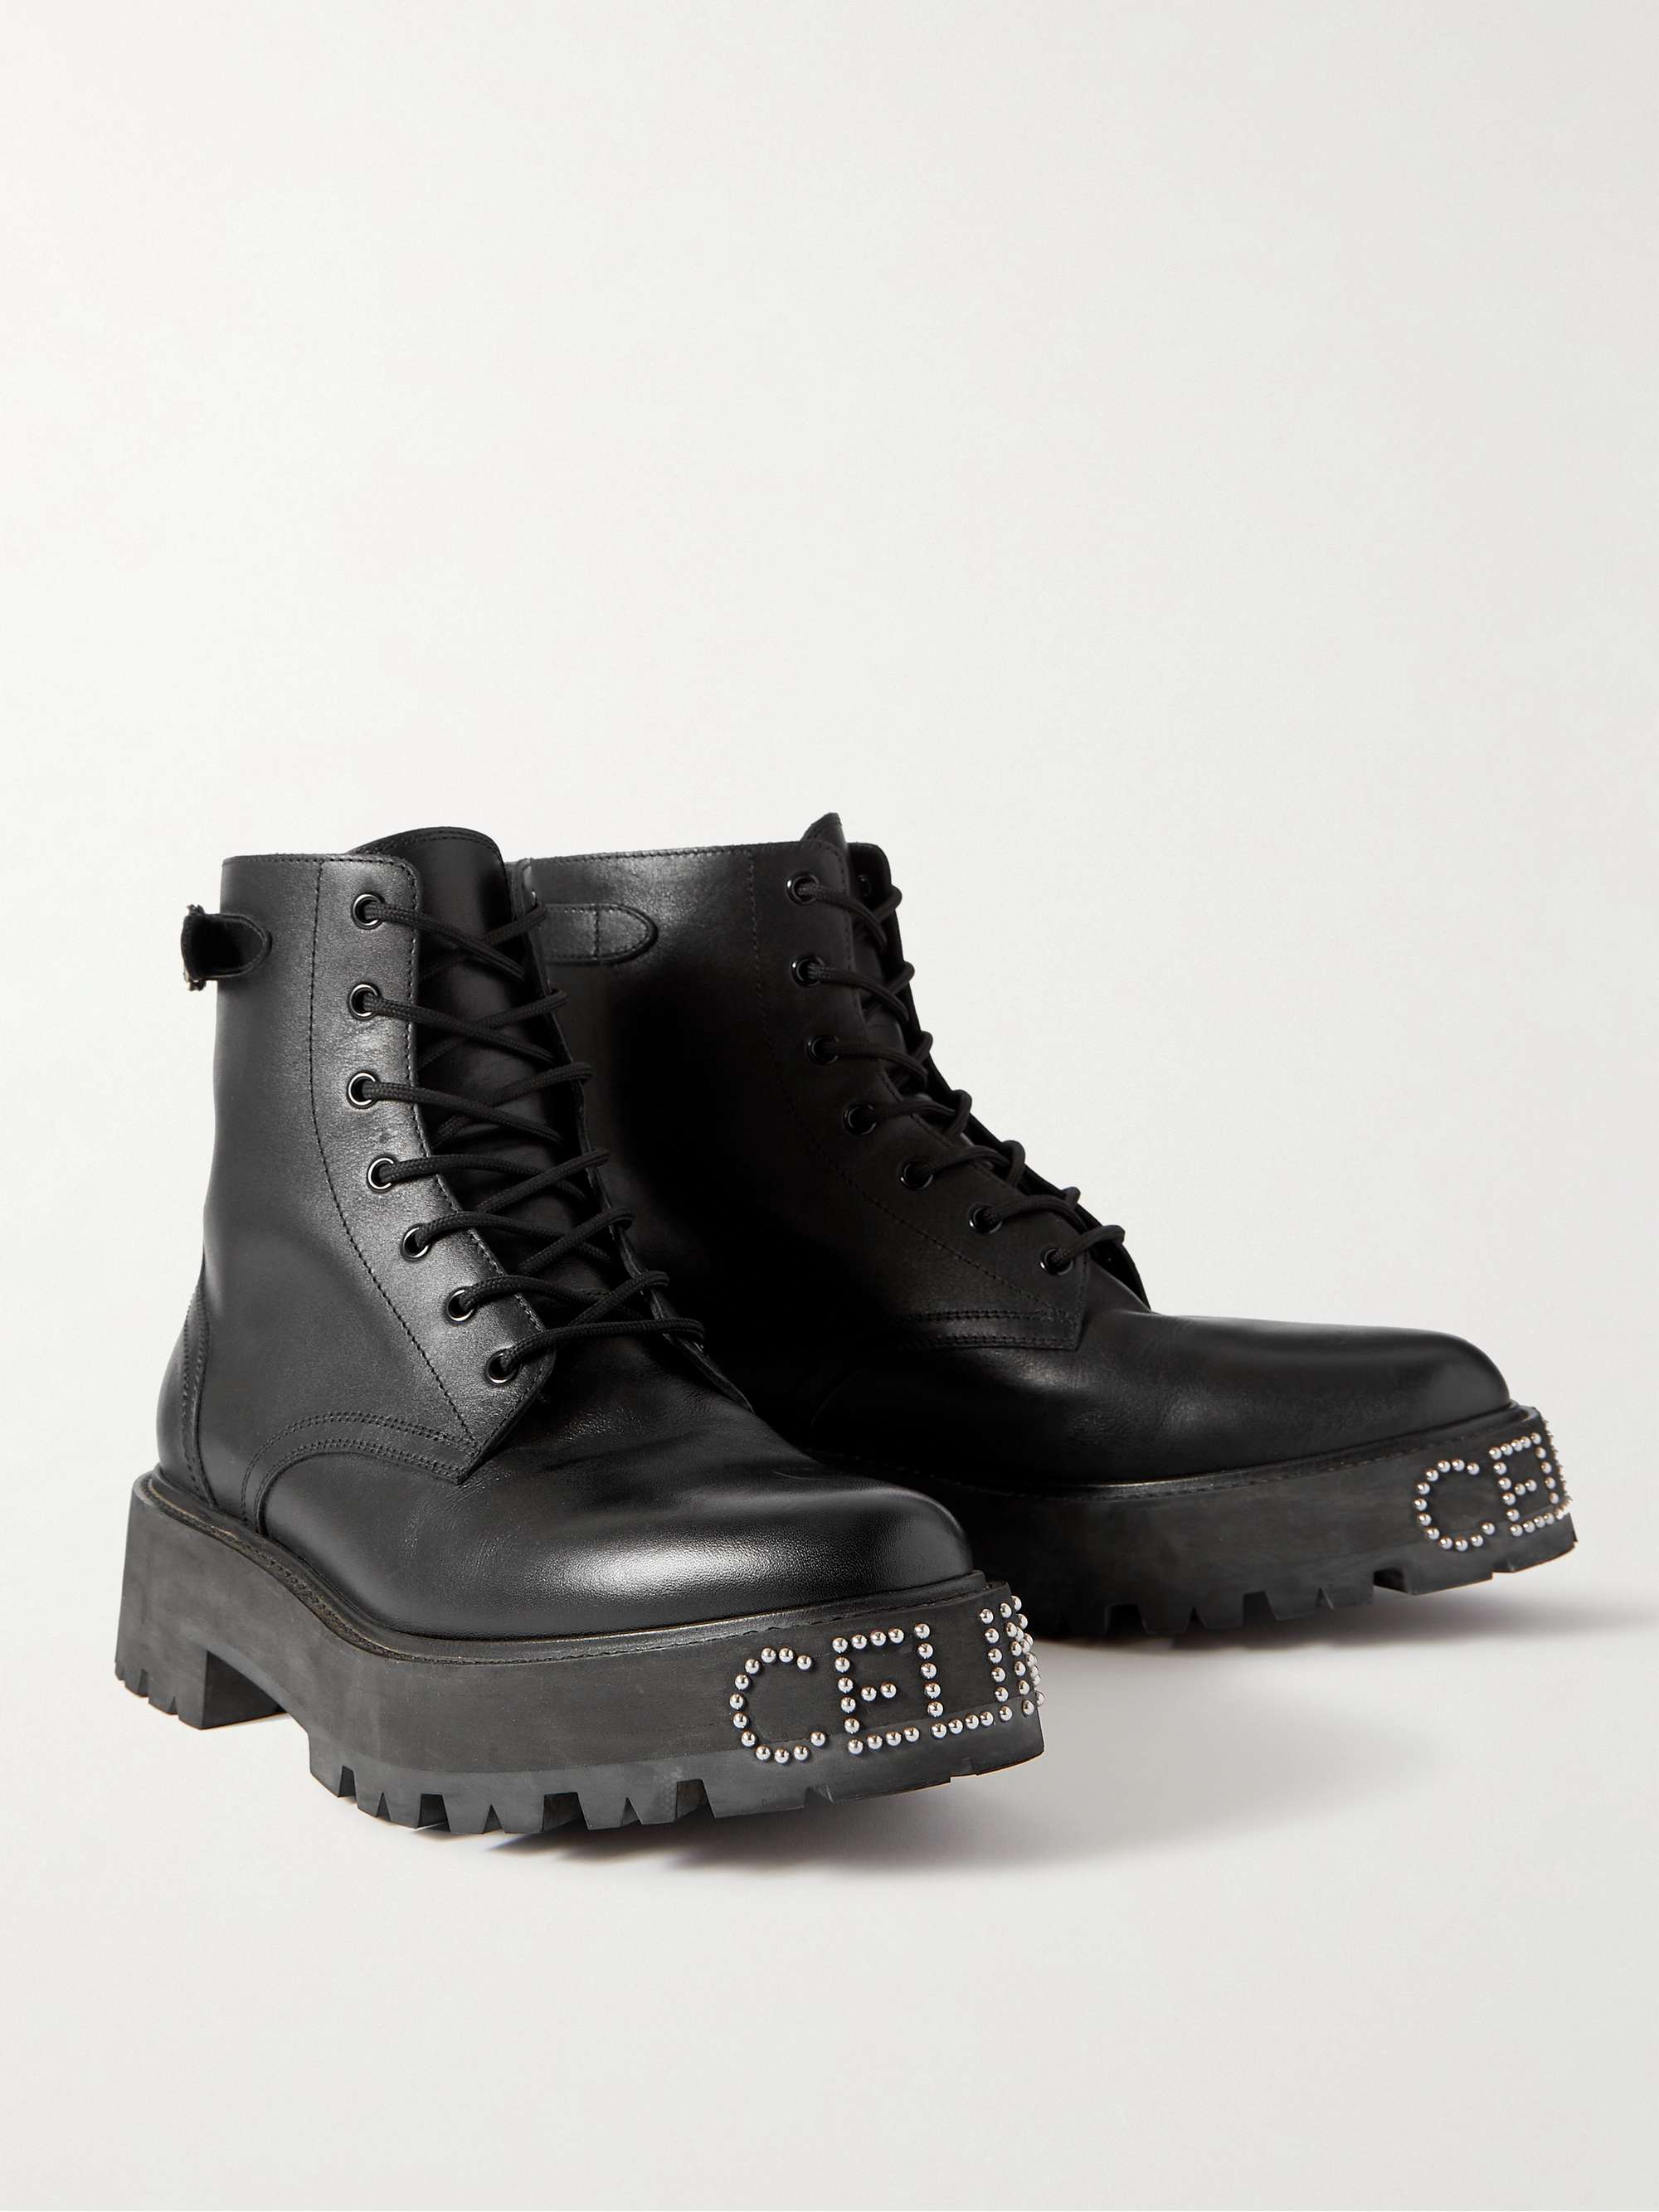 CELINE HOMME Ranger Studded Leather Boots | MR PORTER